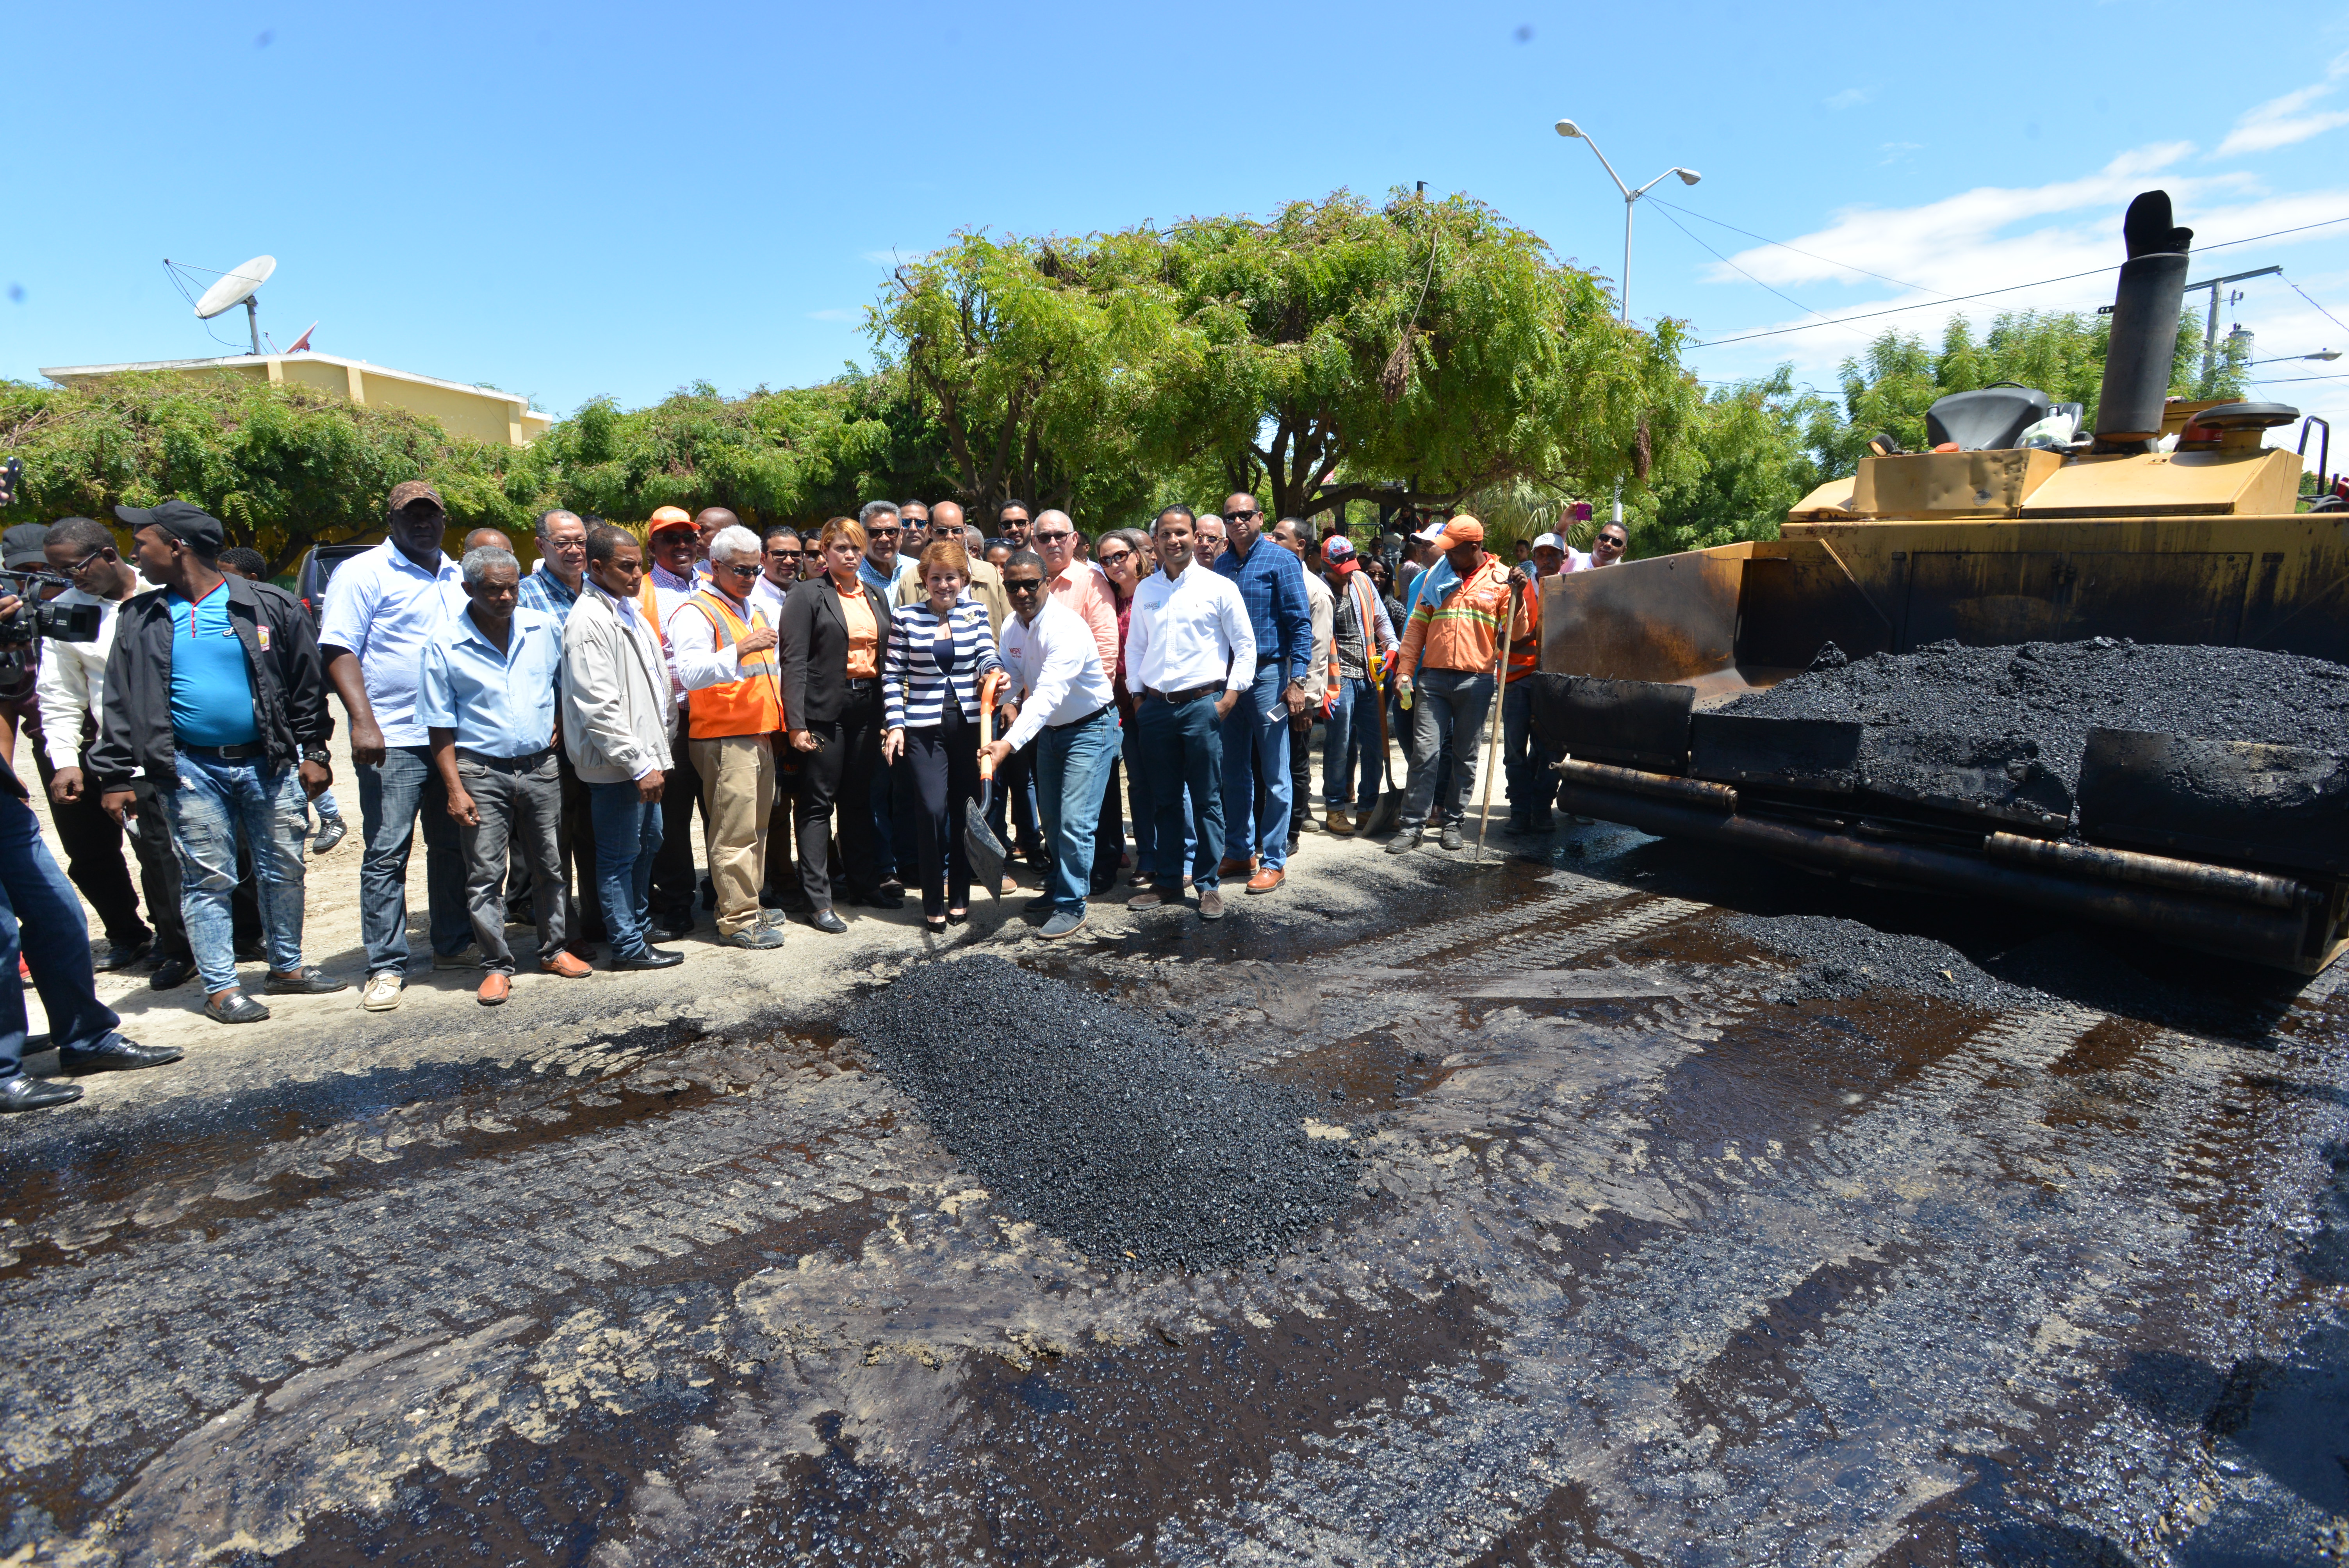  Gobierno inicia amplio plan de asfaltado en calles y avenidas de provincia San Juan